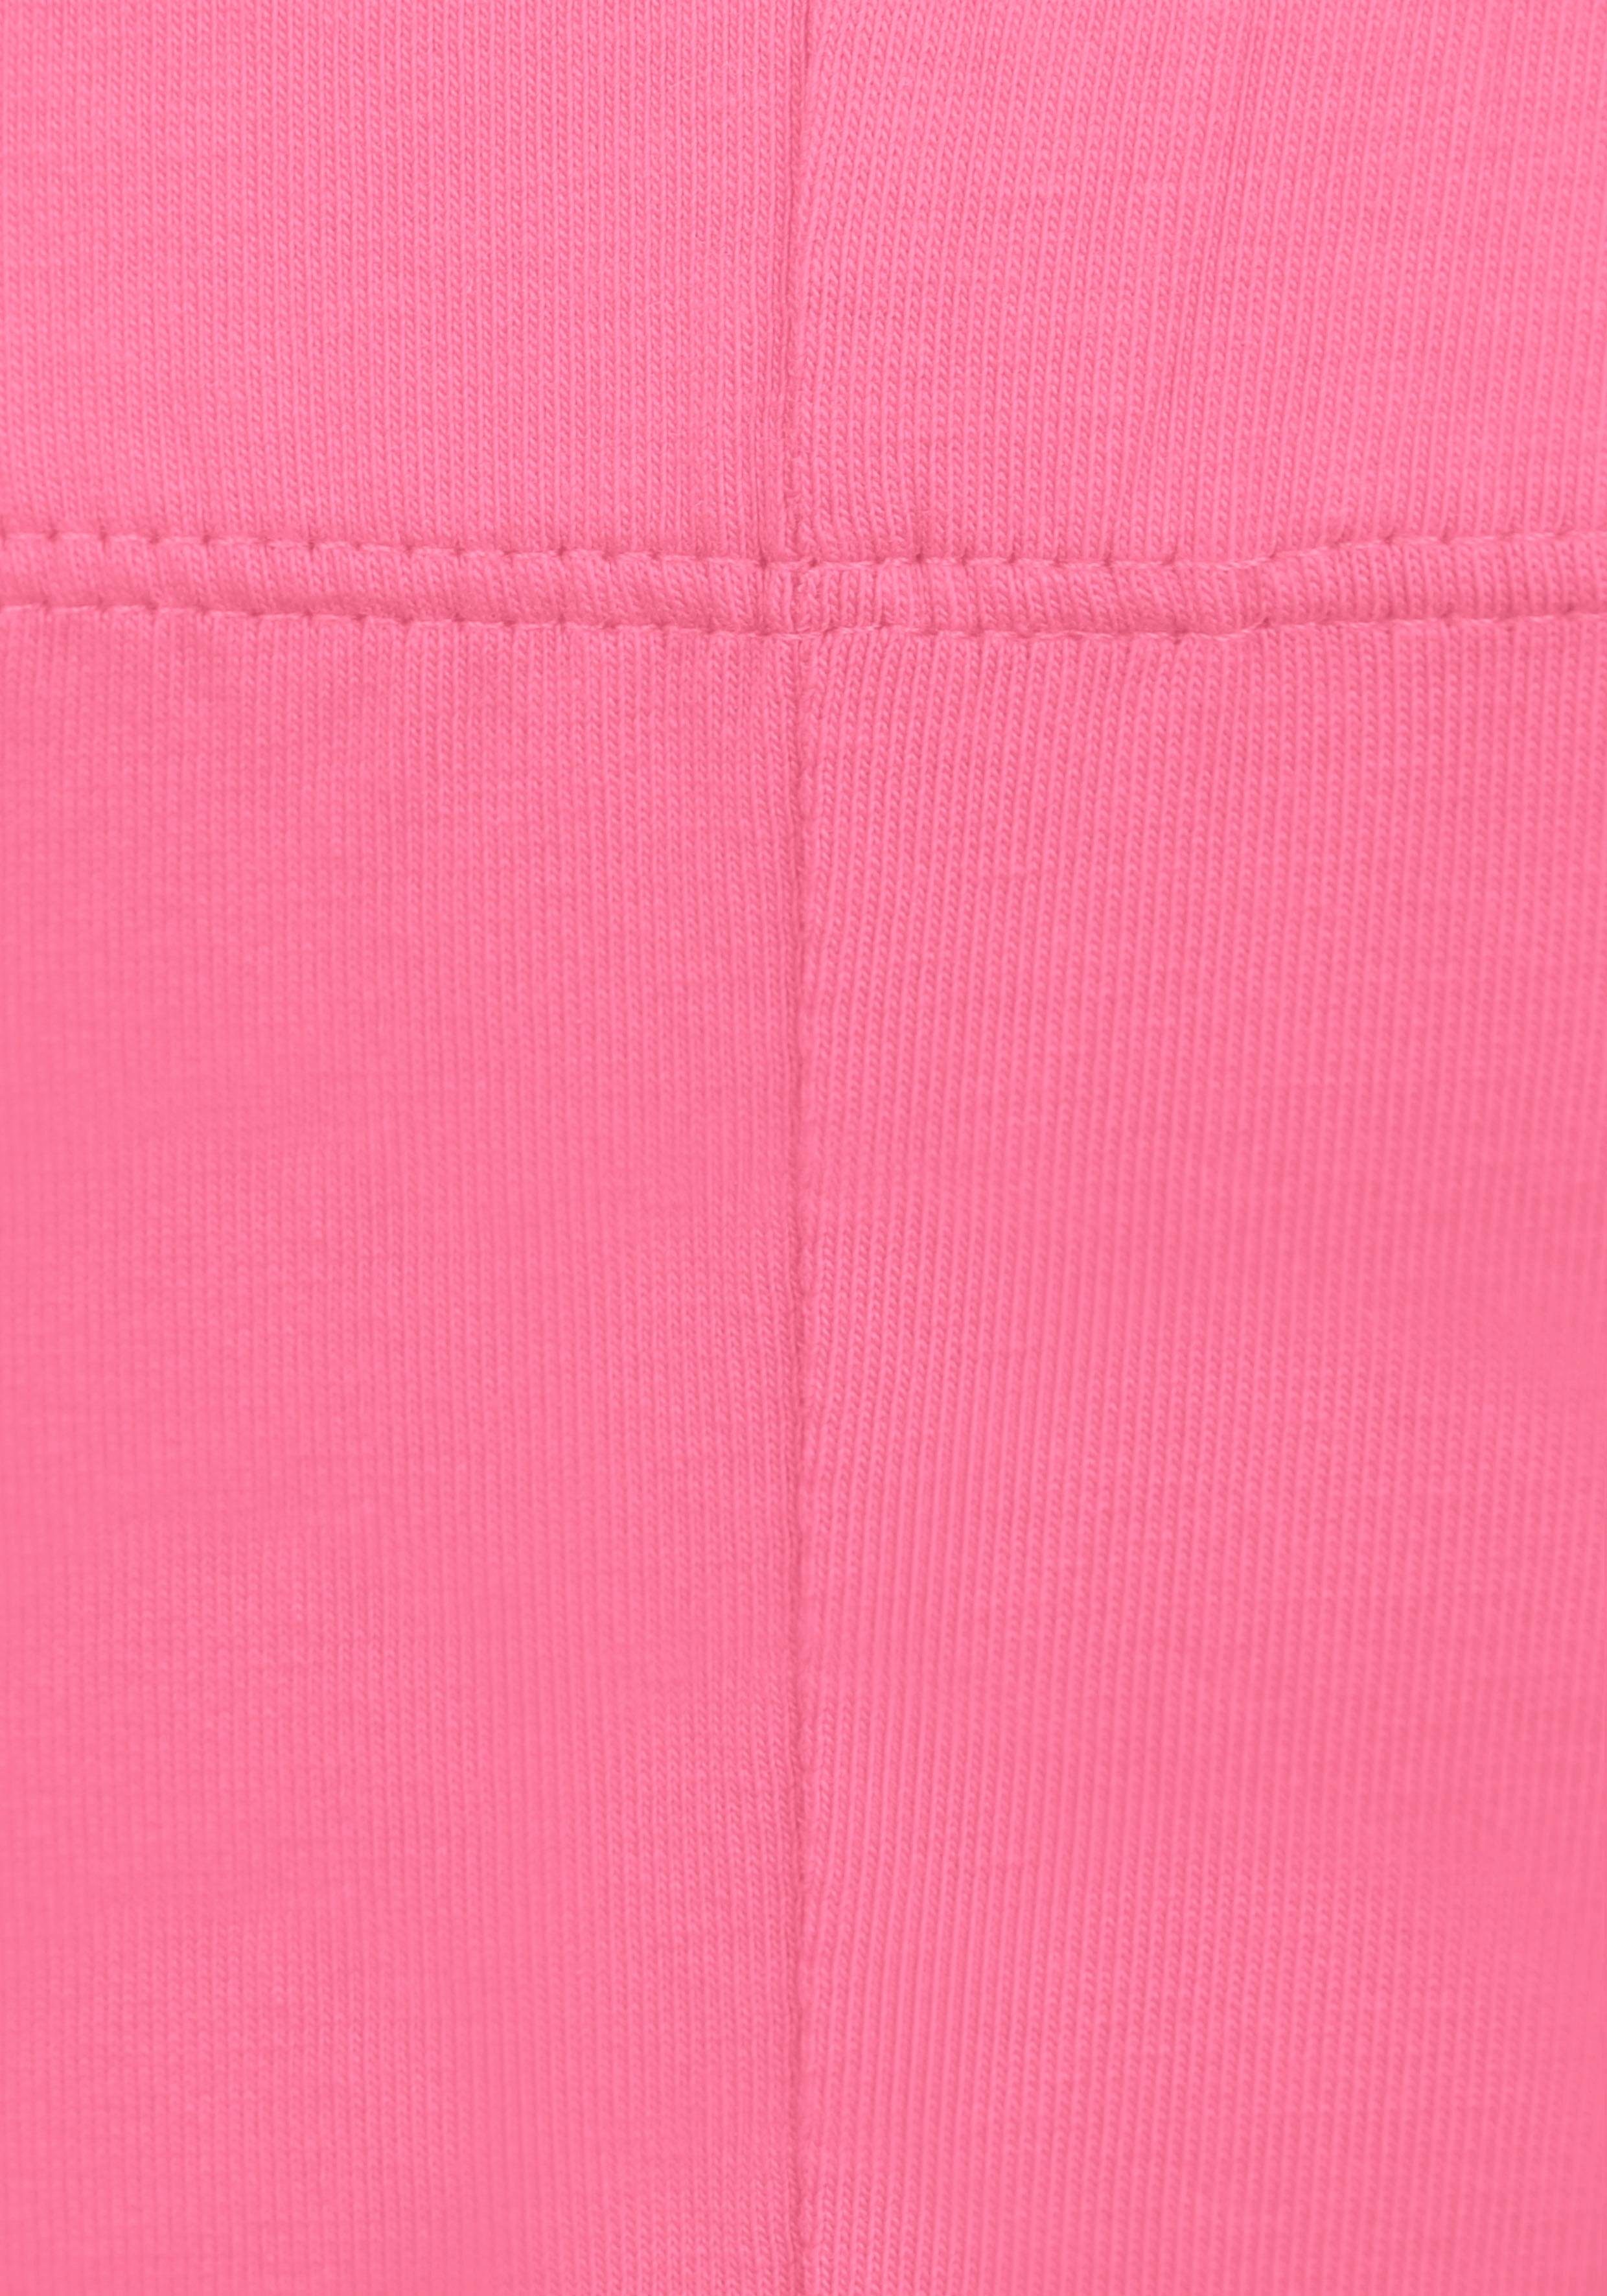 KIDSWORLD Leggings (2er-Pack) in 3/4 rosa, weiß Länge